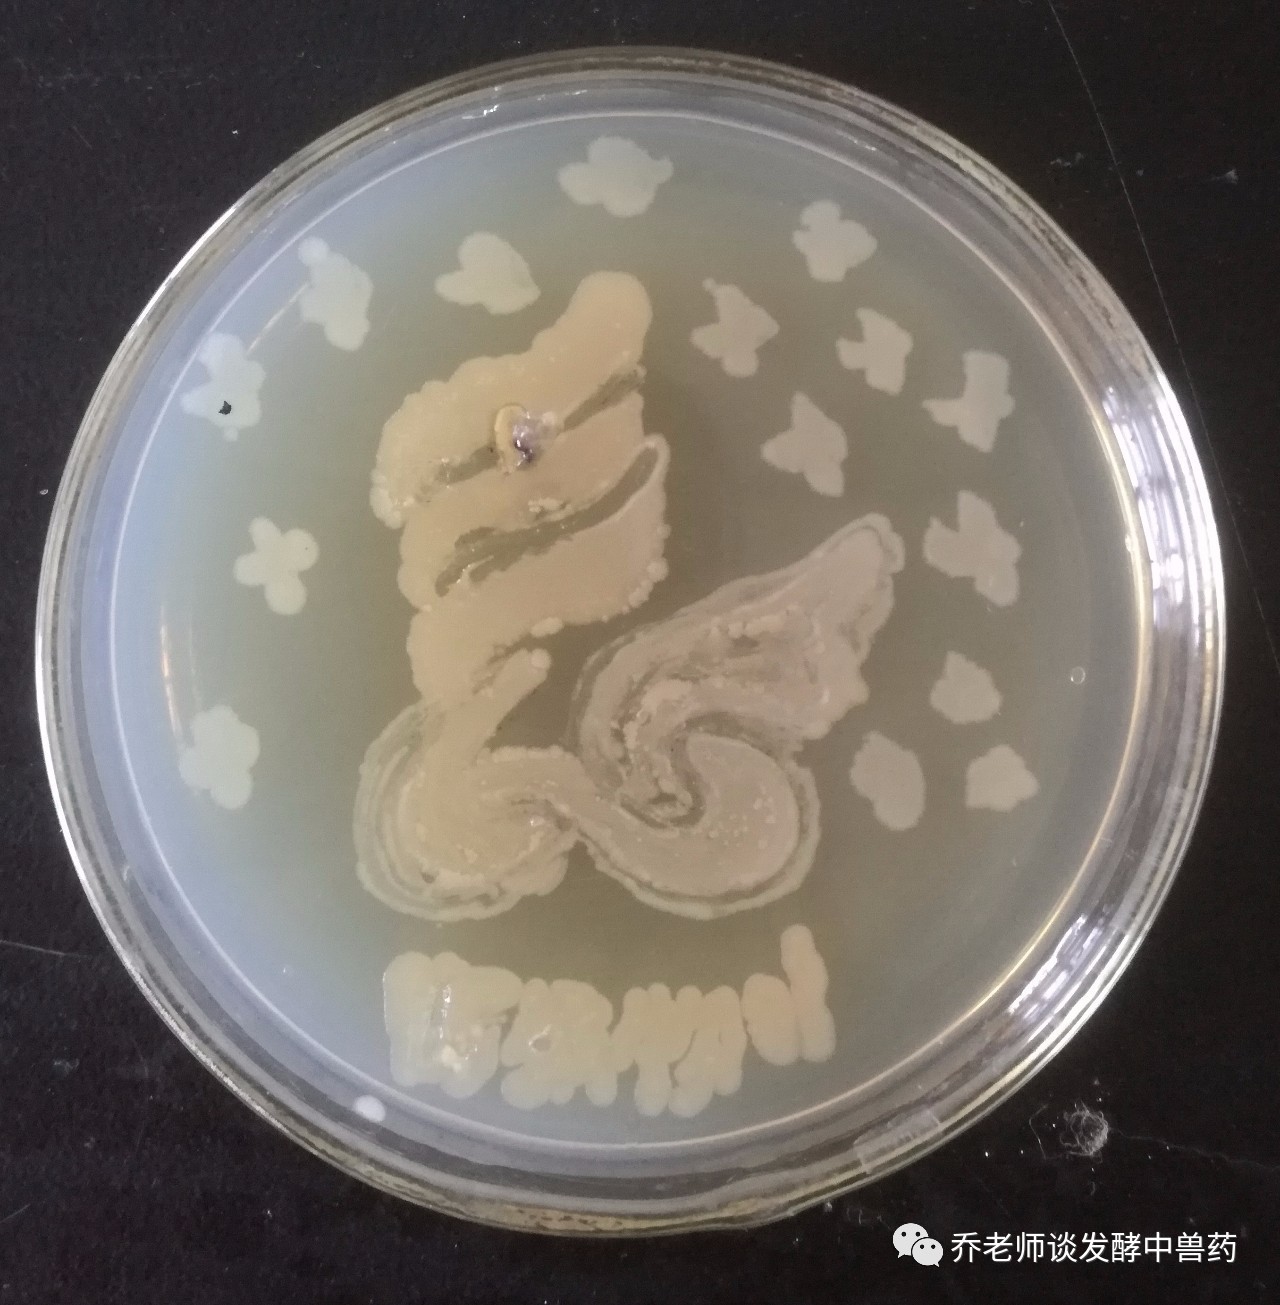 微生物平板"生物之美"涂鸦大赛,竞赛口号:"以菌为墨,平板为纸,涂鸦